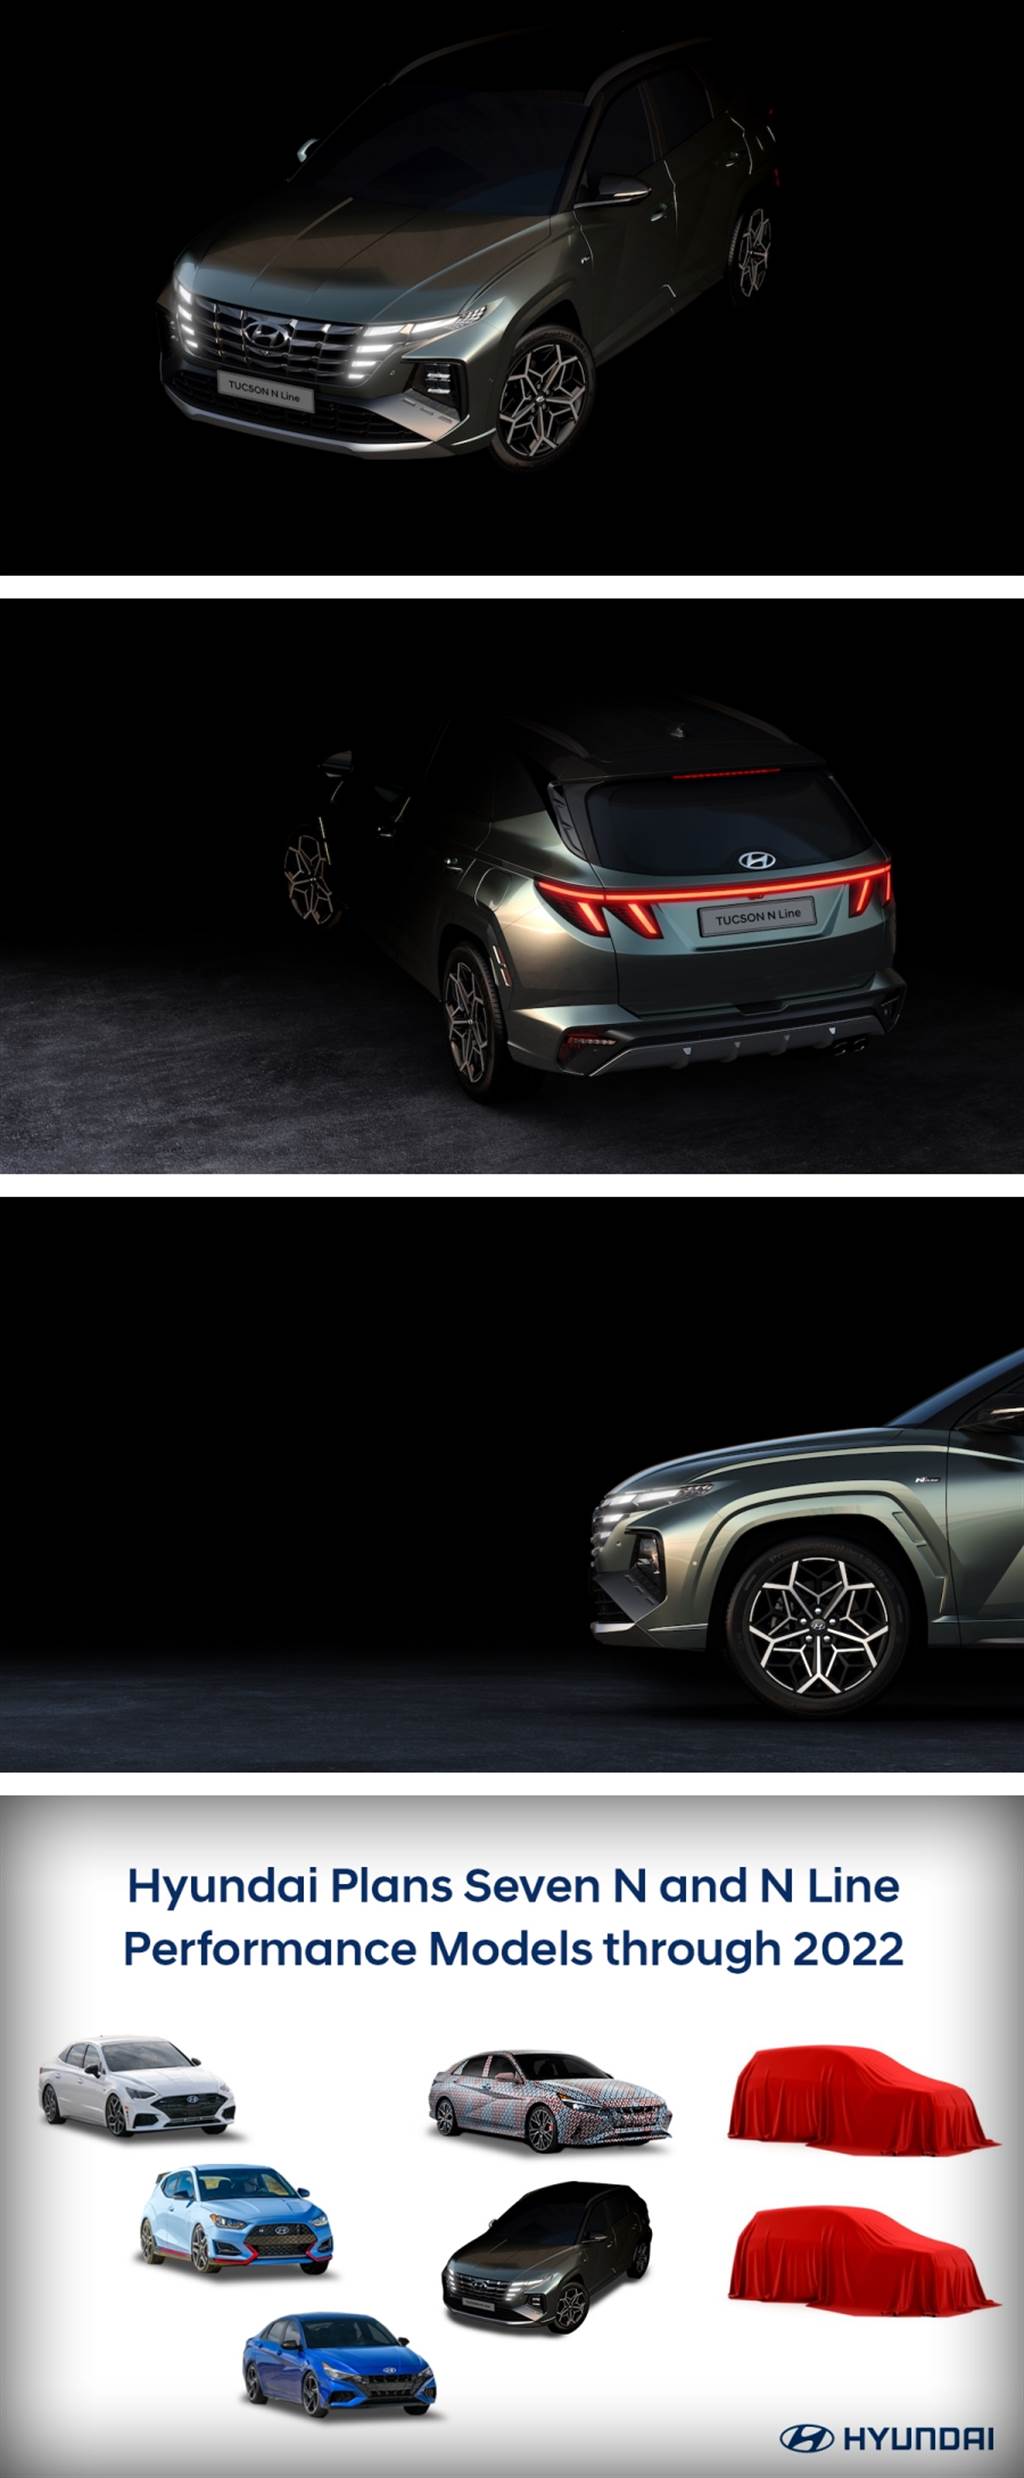 Hyundai Elantra N 原型車曝光、同時宣布2022 年以前將會提供多達 10 款運動型車款！
